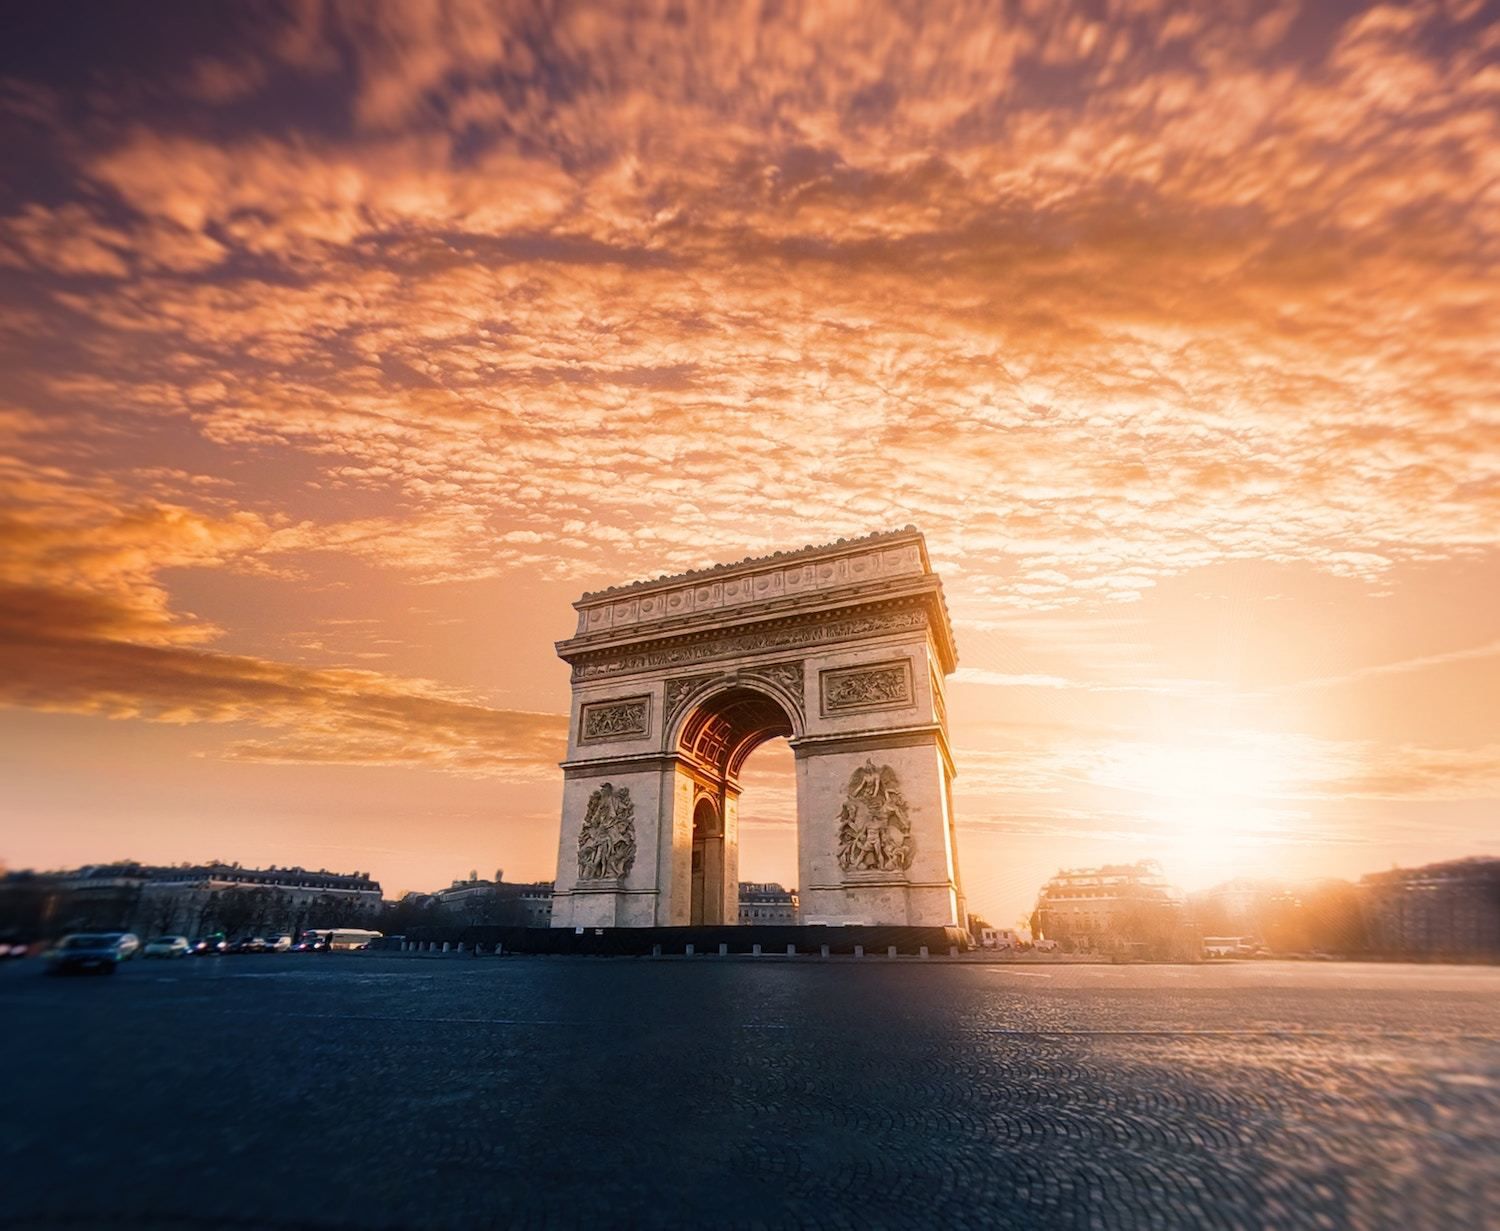 Arc de Triomphe - Best Paris itinerary 4 Days